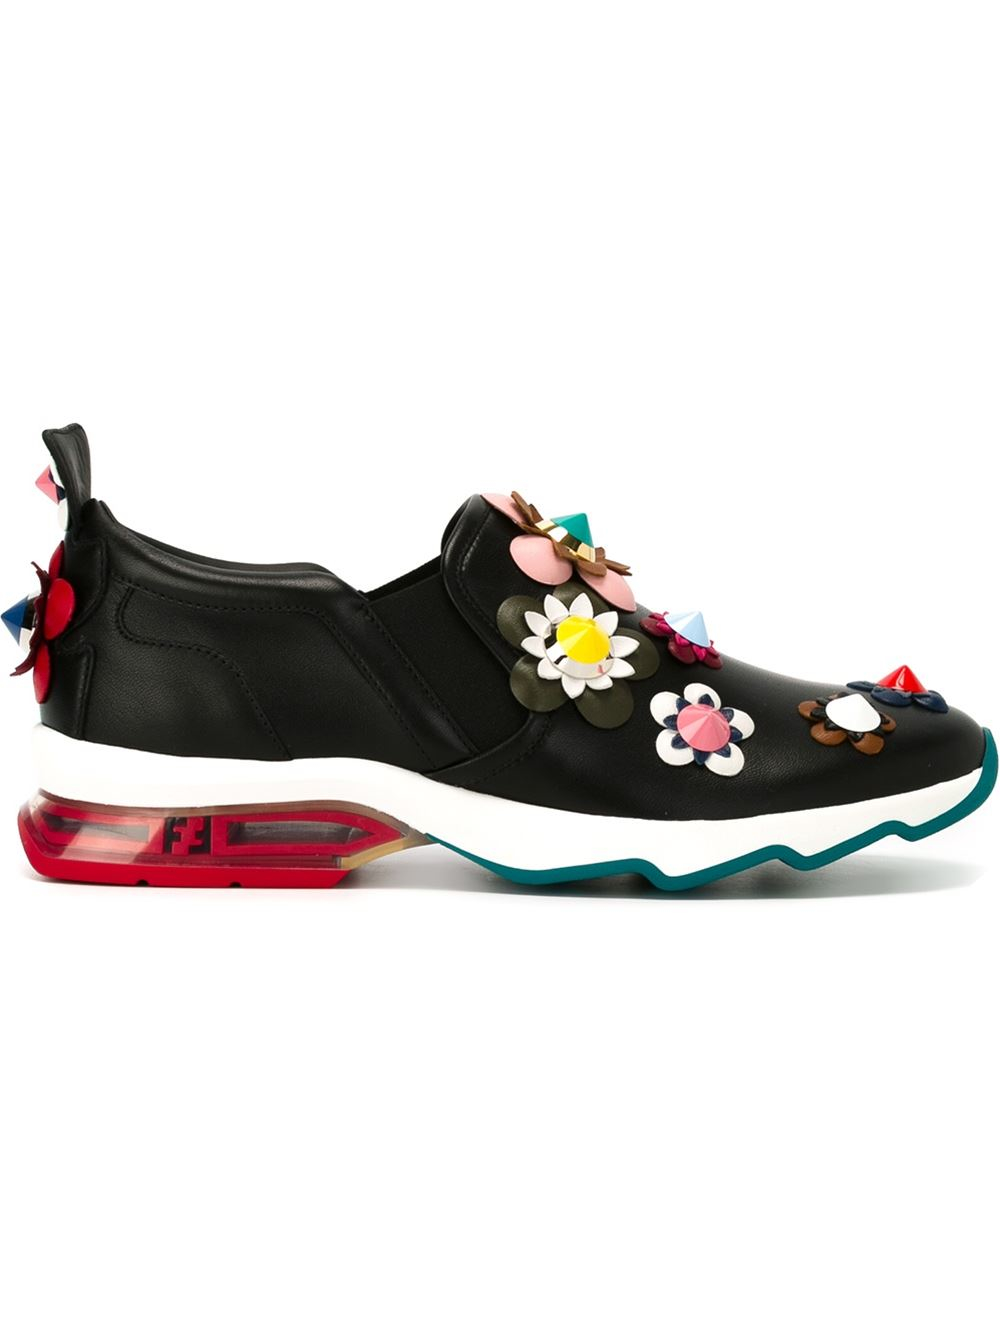 Fendi Leather Flower Appliqué Sneakers in Black - Lyst